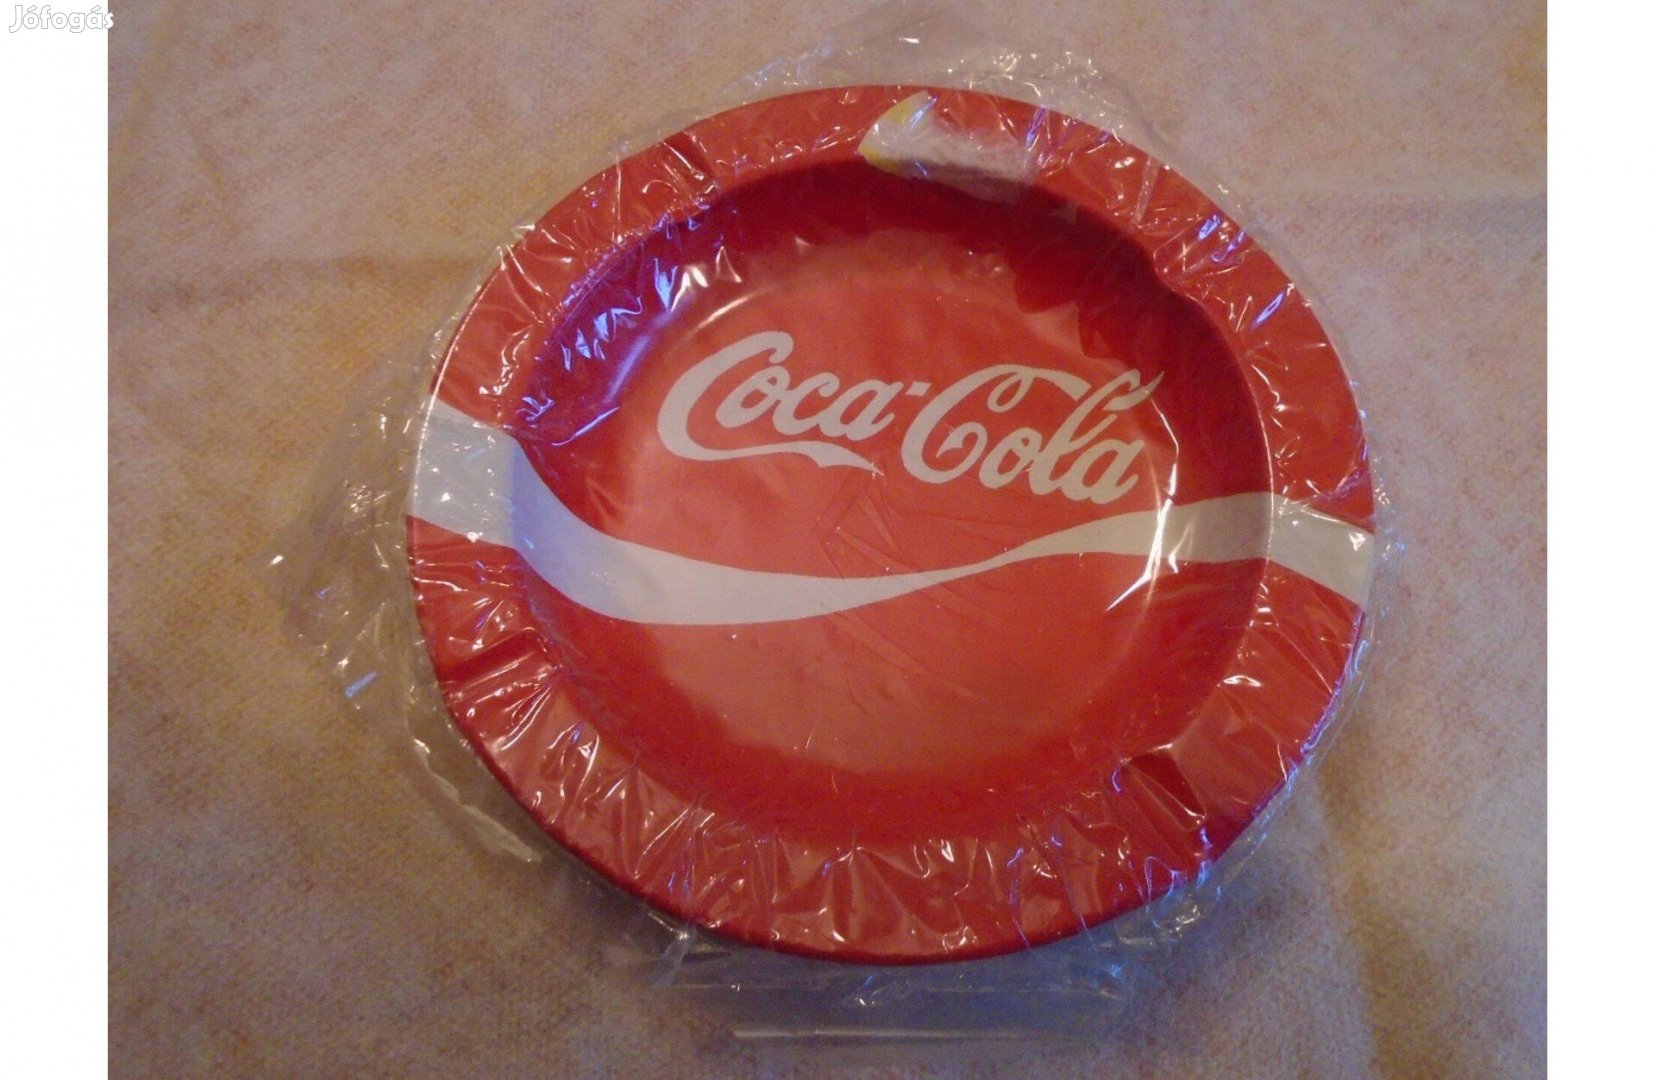 Coca-Cola - fém hamutárca - új, csomagolt - Gyűjtőknek is ajánlom!